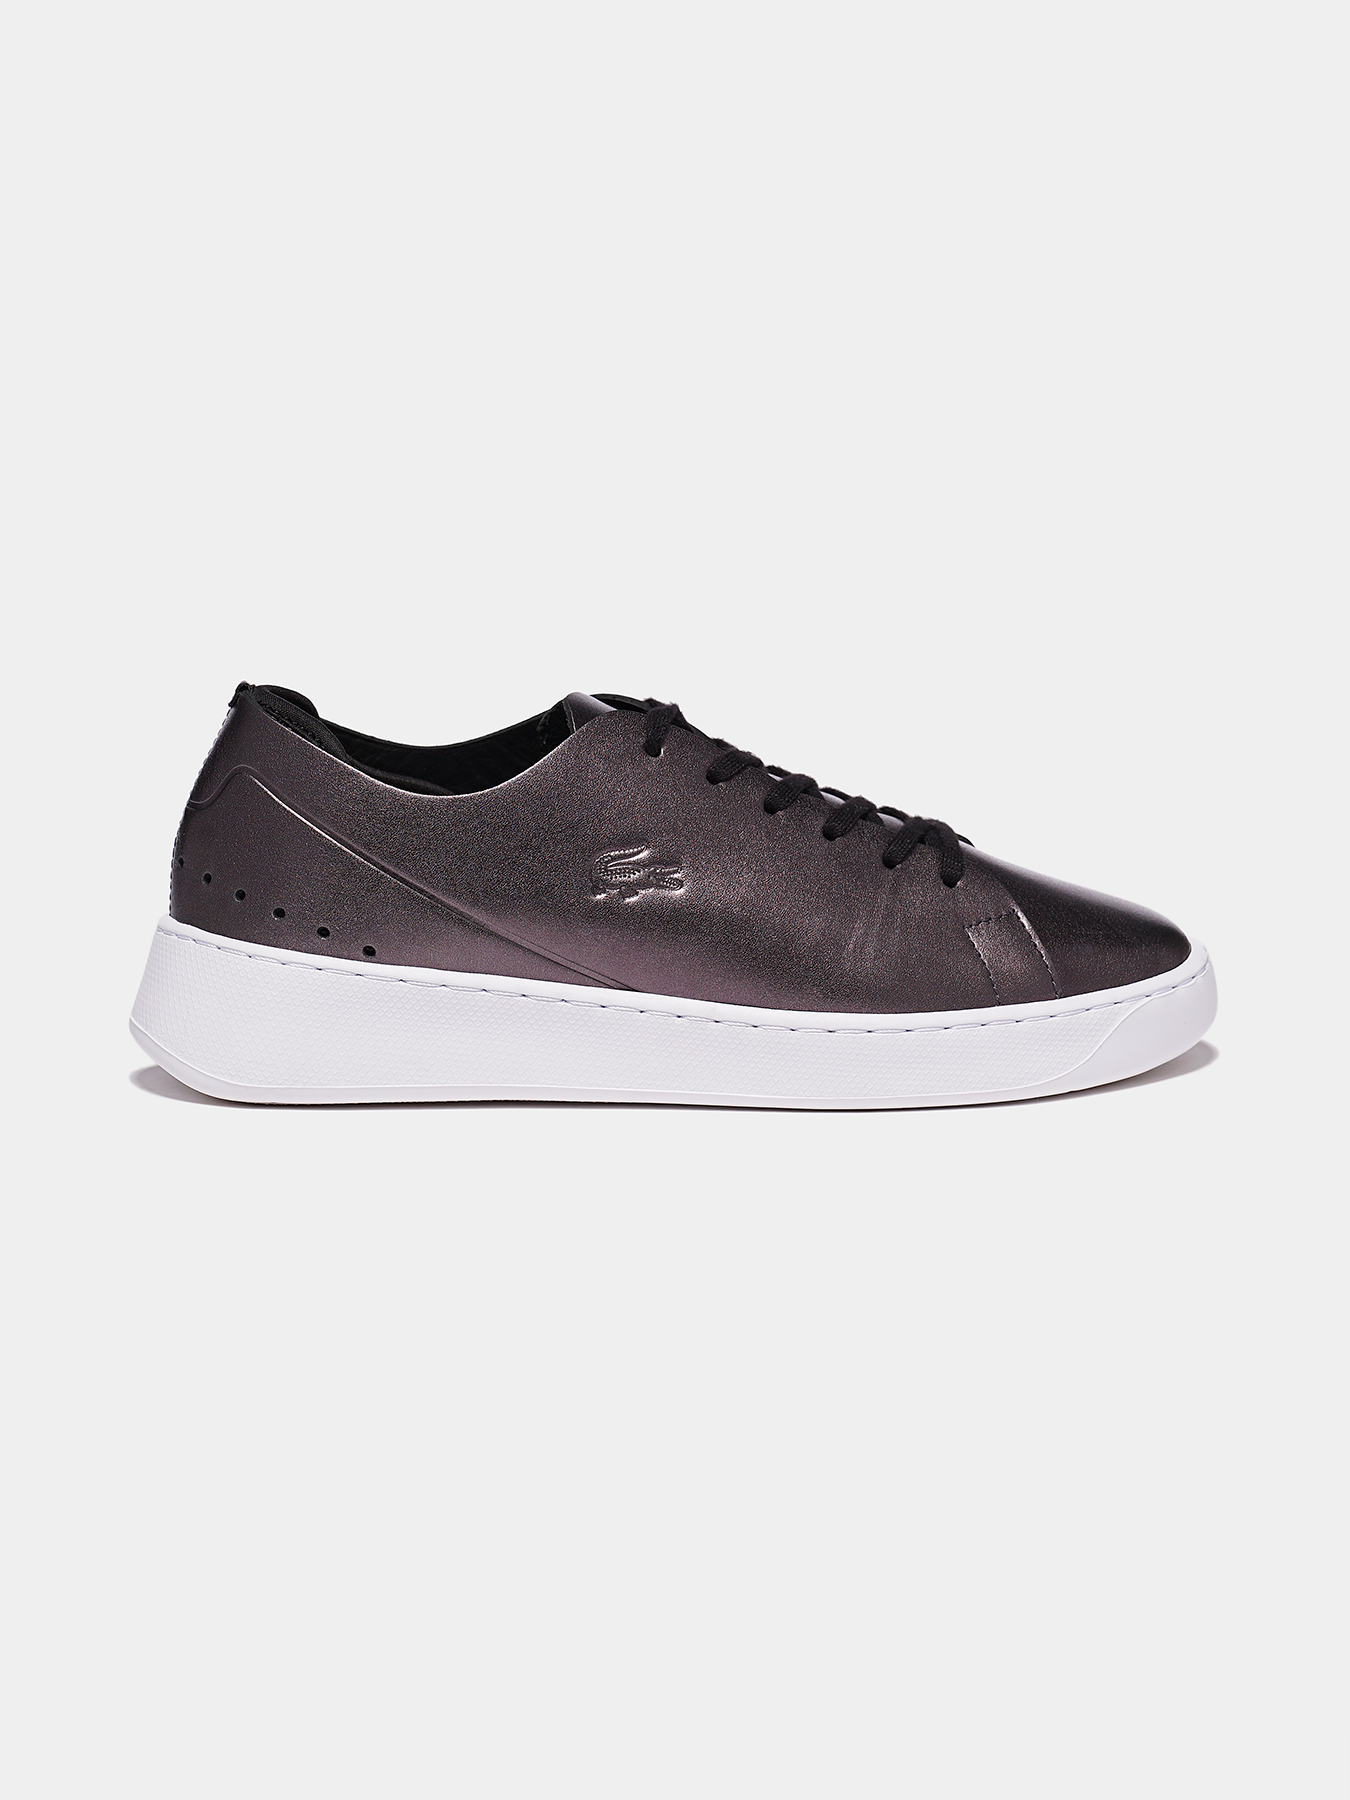 Opaque væv Visum EYYLA 317 Black sneakers brand LACOSTE — Globalbrandsstore.com/en